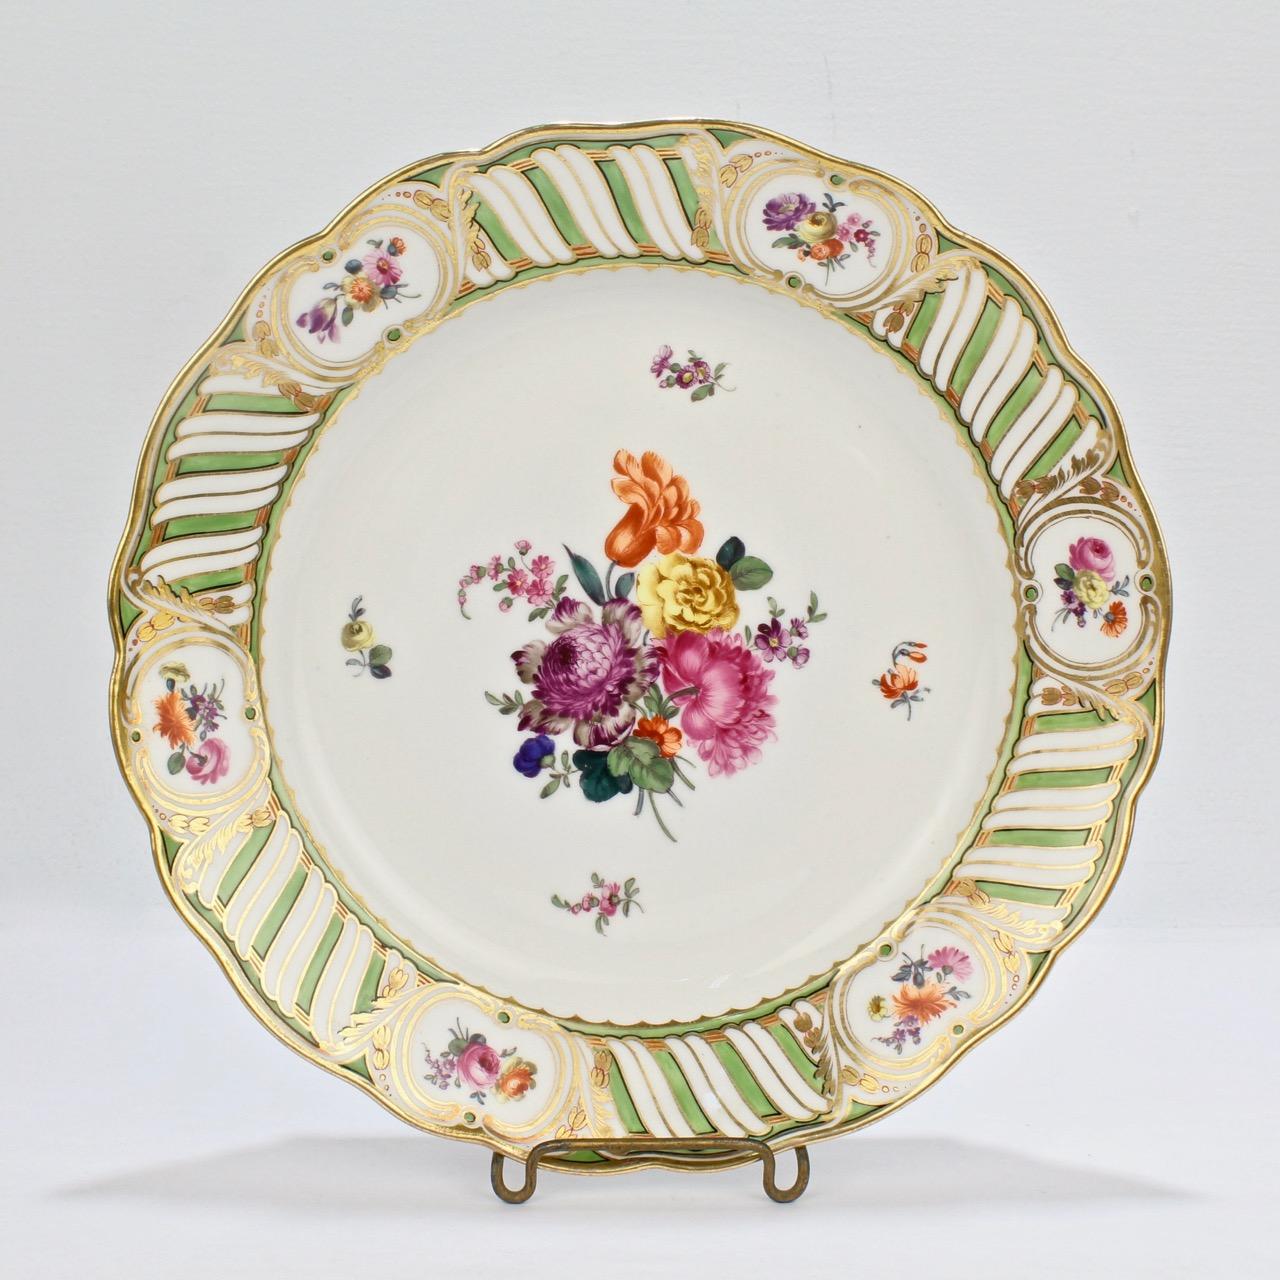 6 Antique Vienna Porcelain Plates with Green Borders & Deutsche Blumen Flowers 1